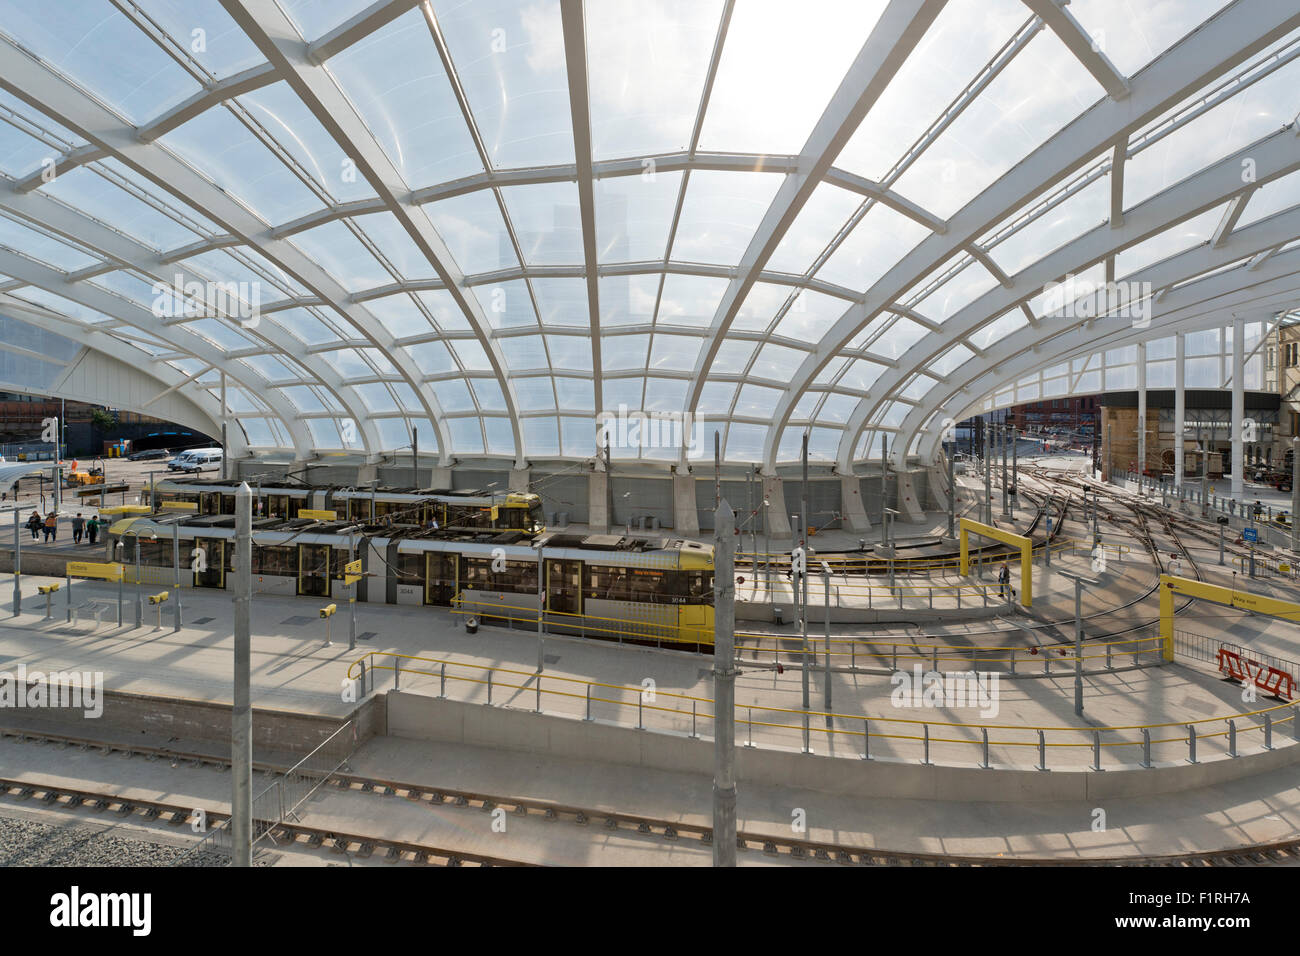 Die Innenfläche der renovierte Victoria Station in Manchester Metrolink LRT Station featuring Stockfoto